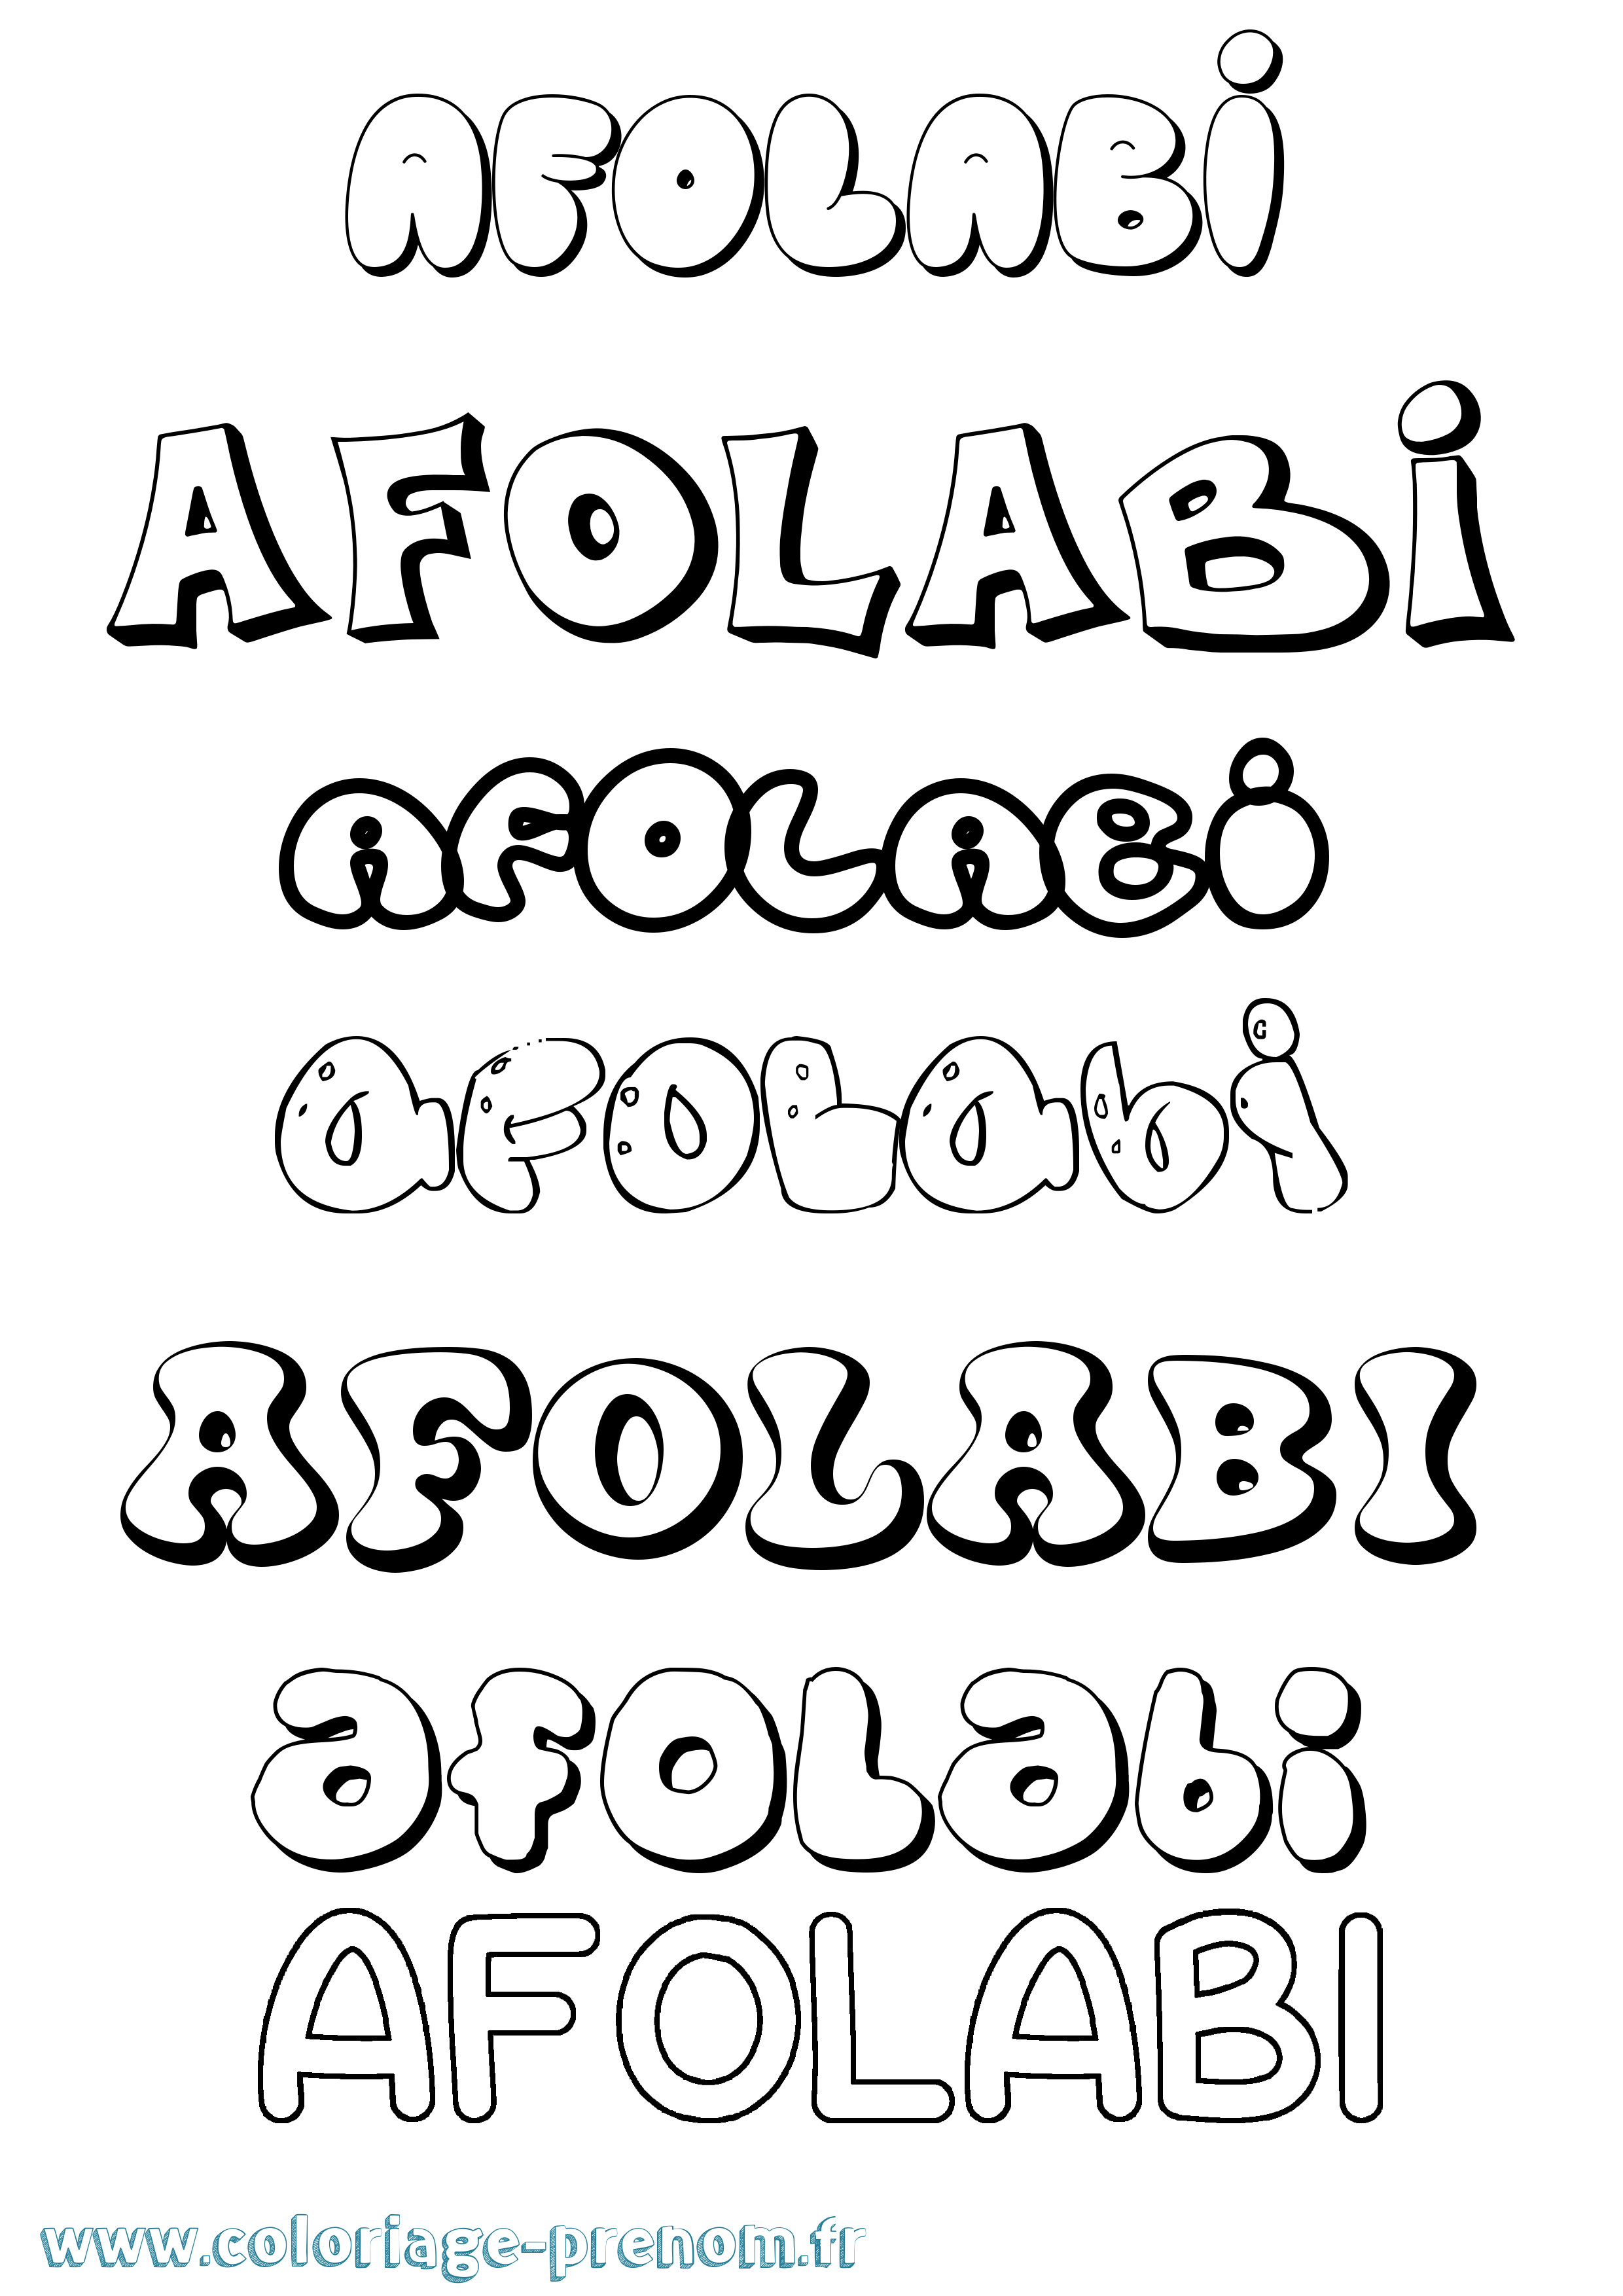 Coloriage prénom Afolabi Bubble